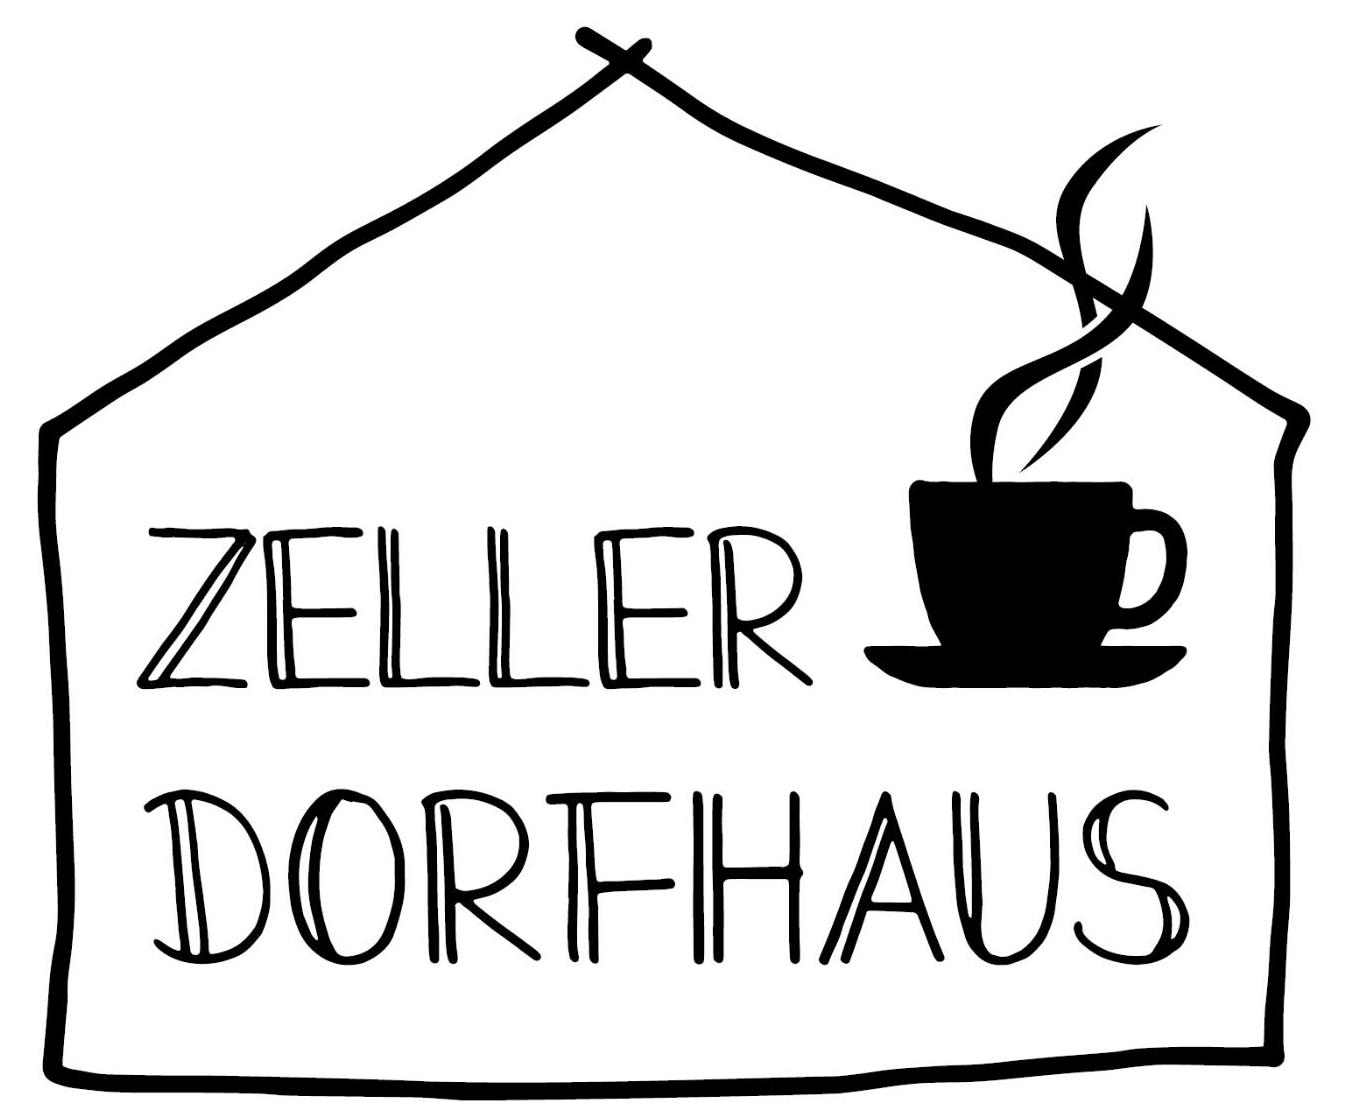 Zeller Dorfhaus